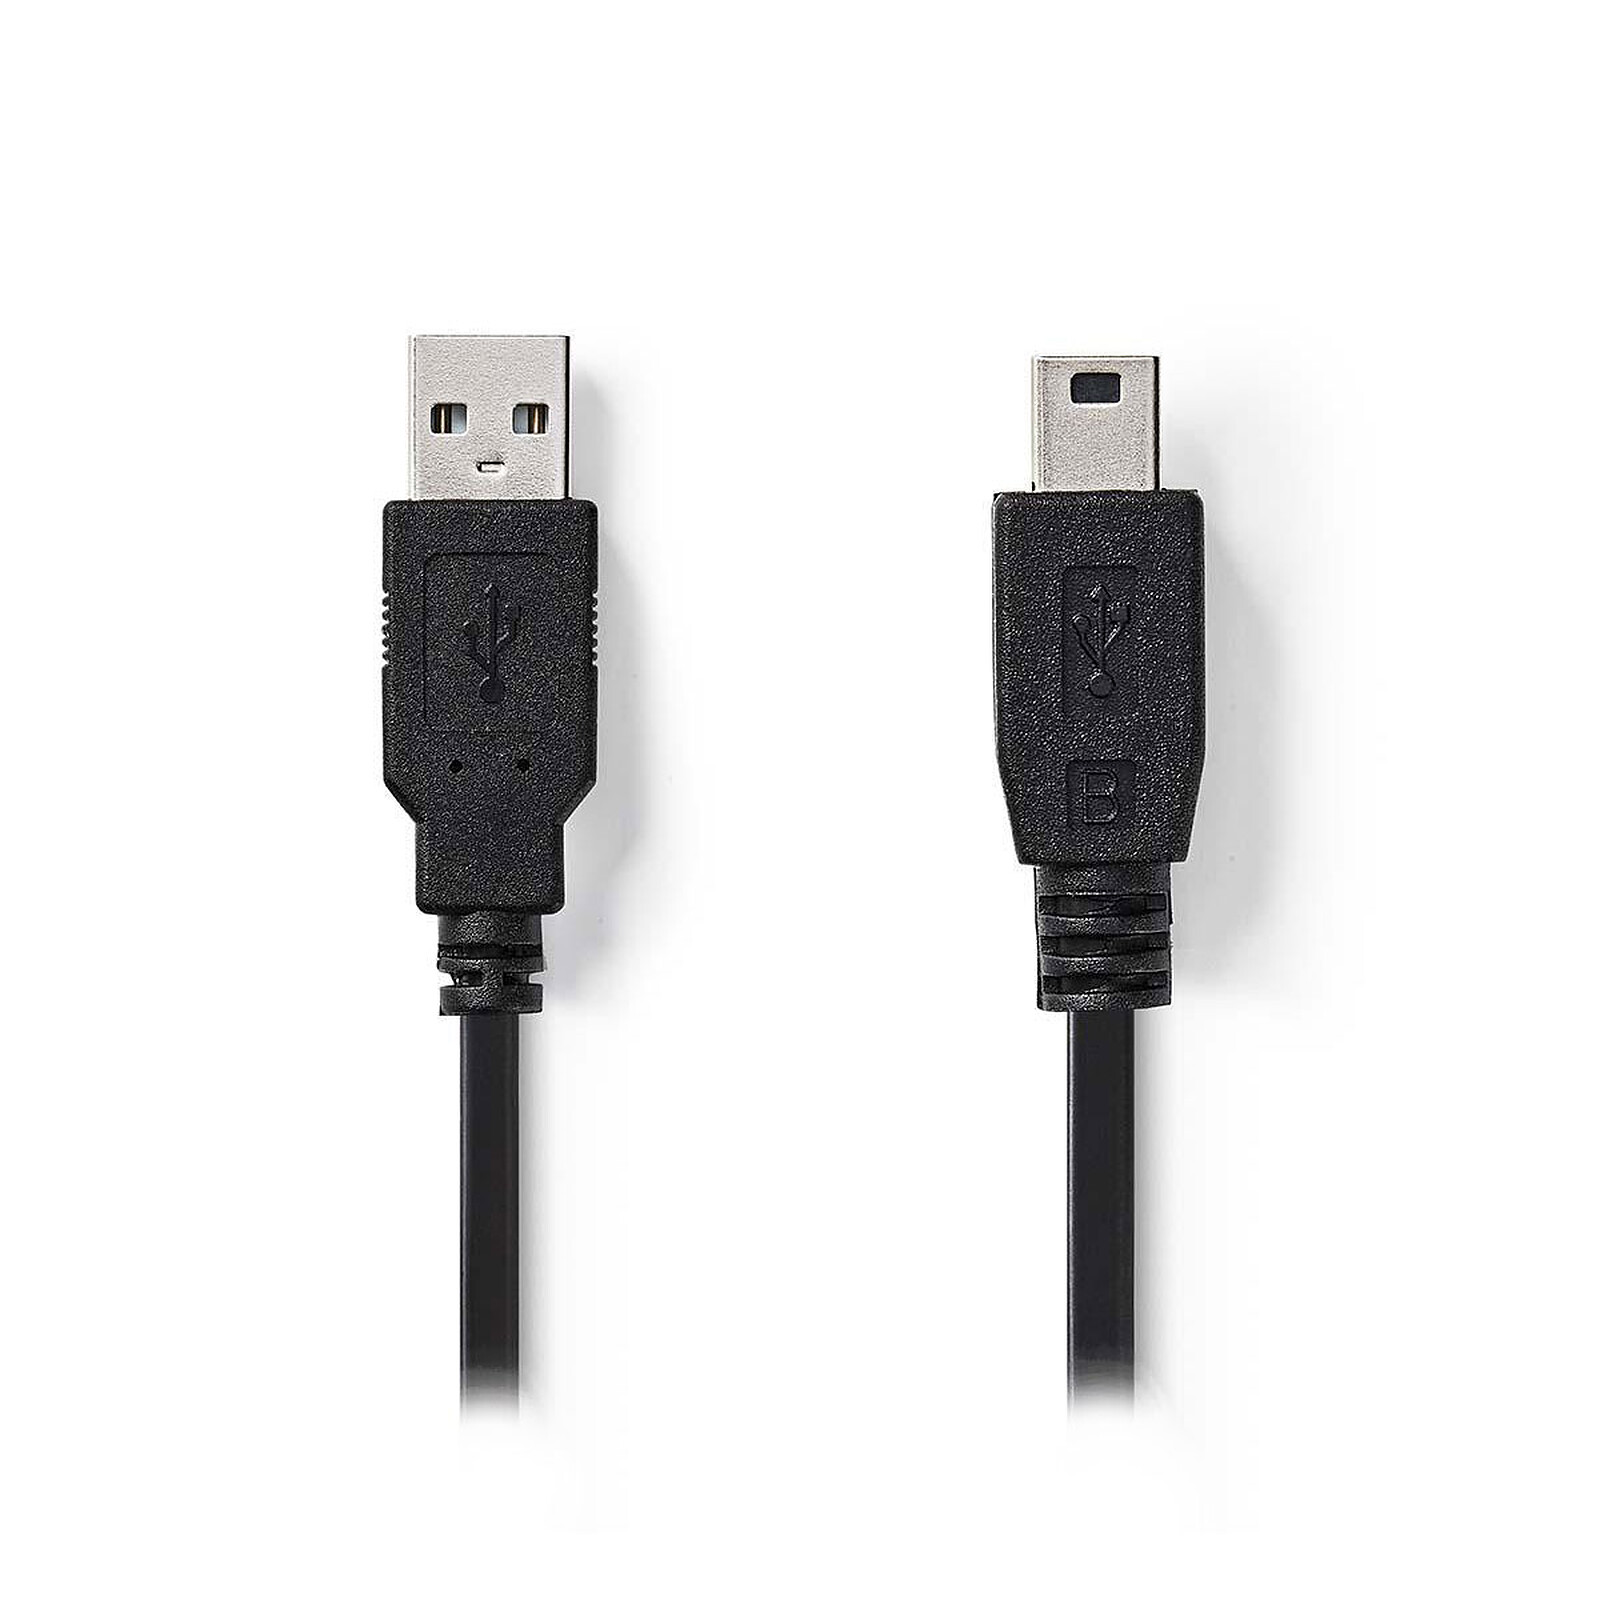 50cm HDMI Hembra + HDMI Macho a USB 2.0 Cable Adaptador de Conector Ma